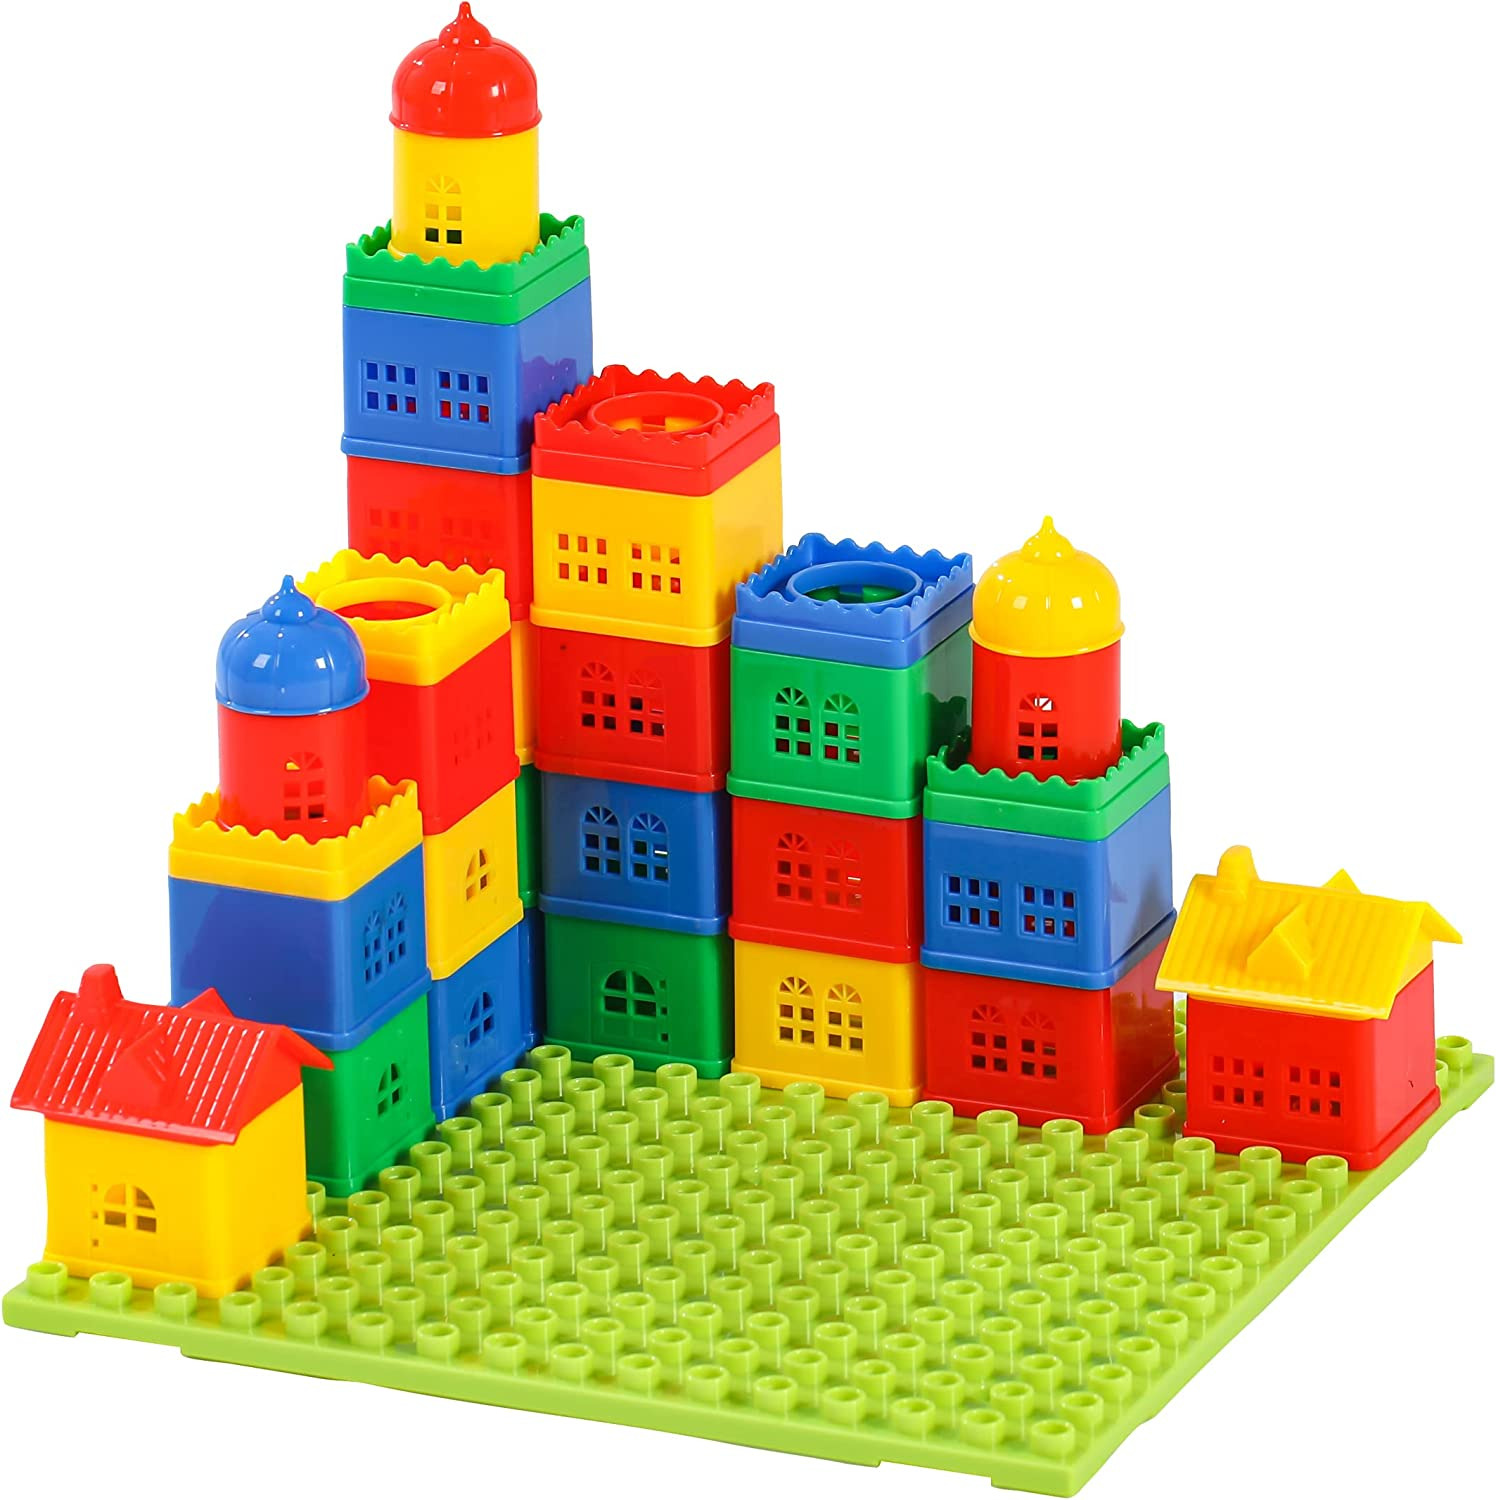 Fun Stacking Blocks for Toddlers 4-8